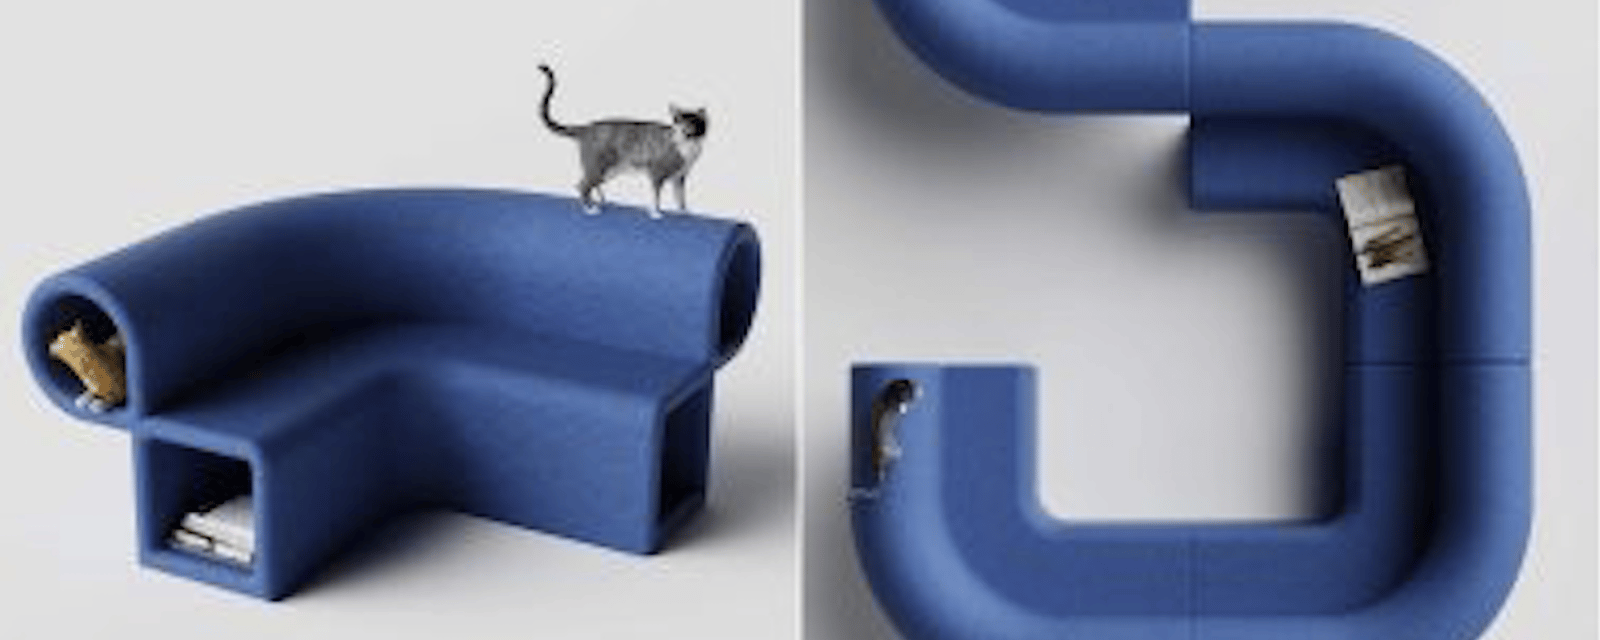 Le canapé modulable qui ferait très plaisir à votre chat